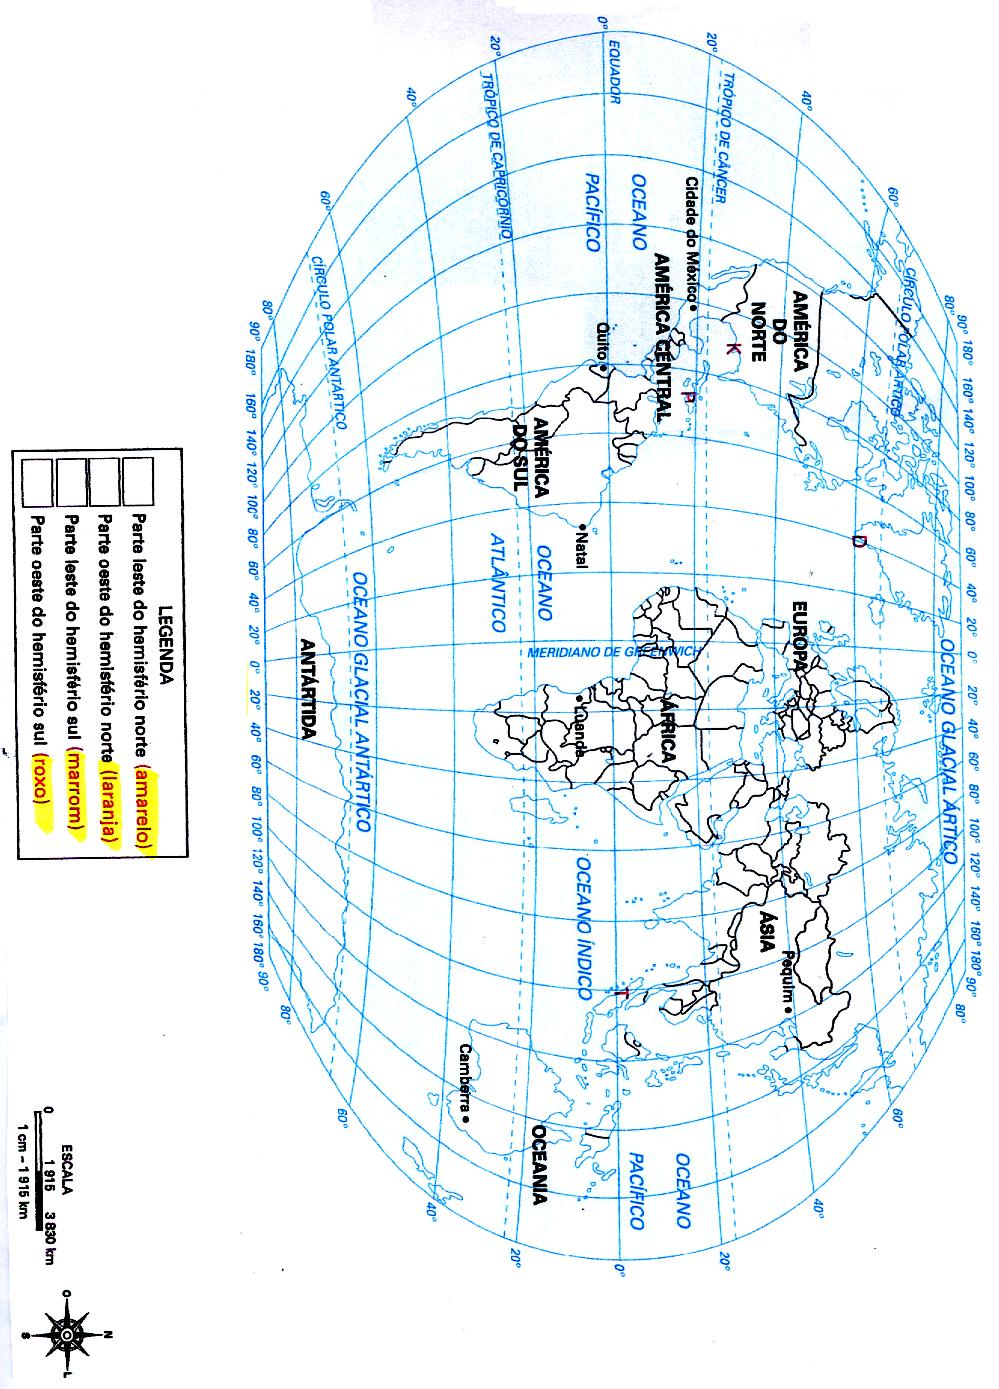 23- Realize os comandos propostos no planisfério a seguir: Legenda Parte leste do hemisfério norte.